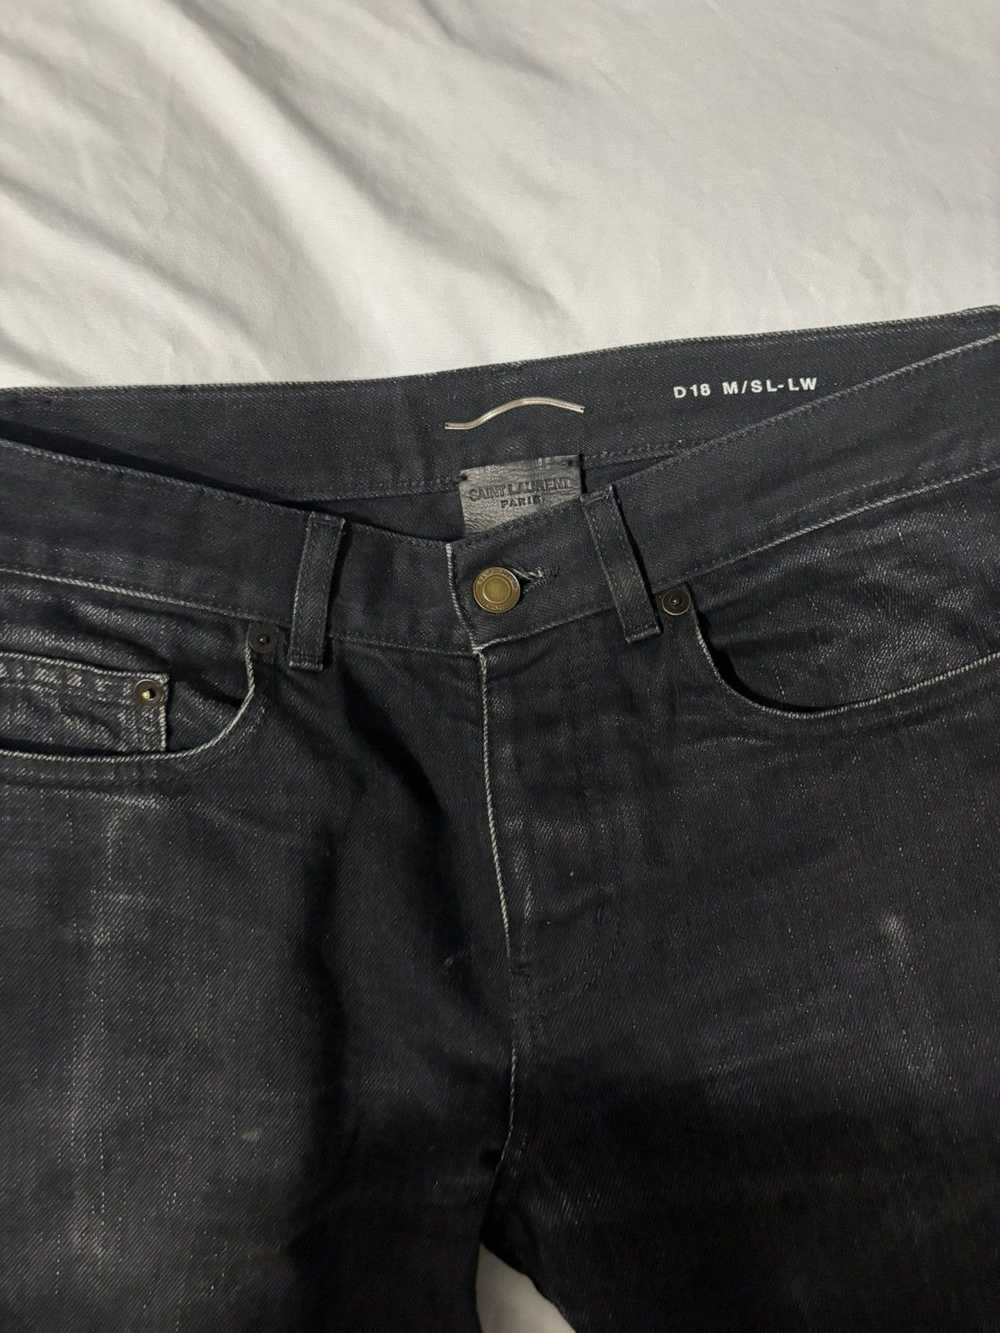 Yves Saint Laurent SLP denim black skinny jeans 3… - image 3